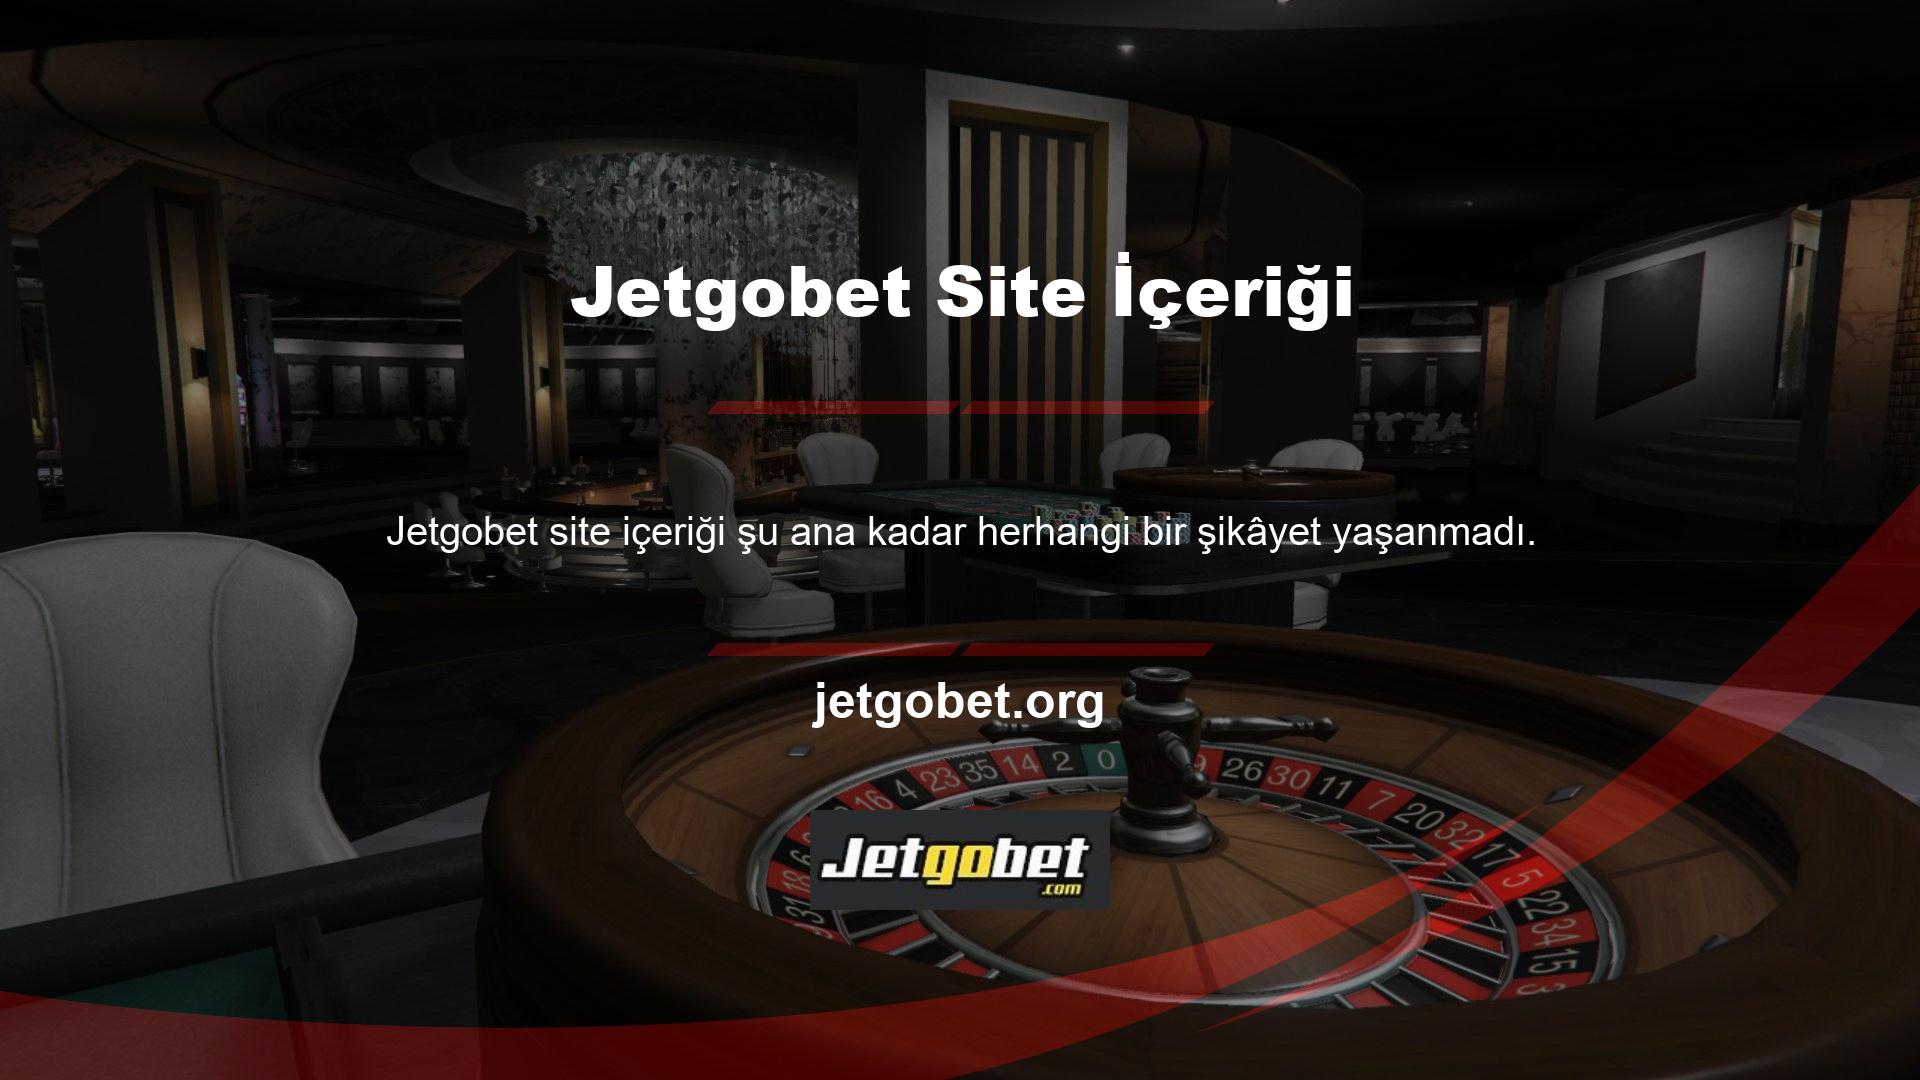 Jetgobet site içeriğini korumak için 7 gün 24 saat sizlere hizmet vermeye her zaman hazırdır